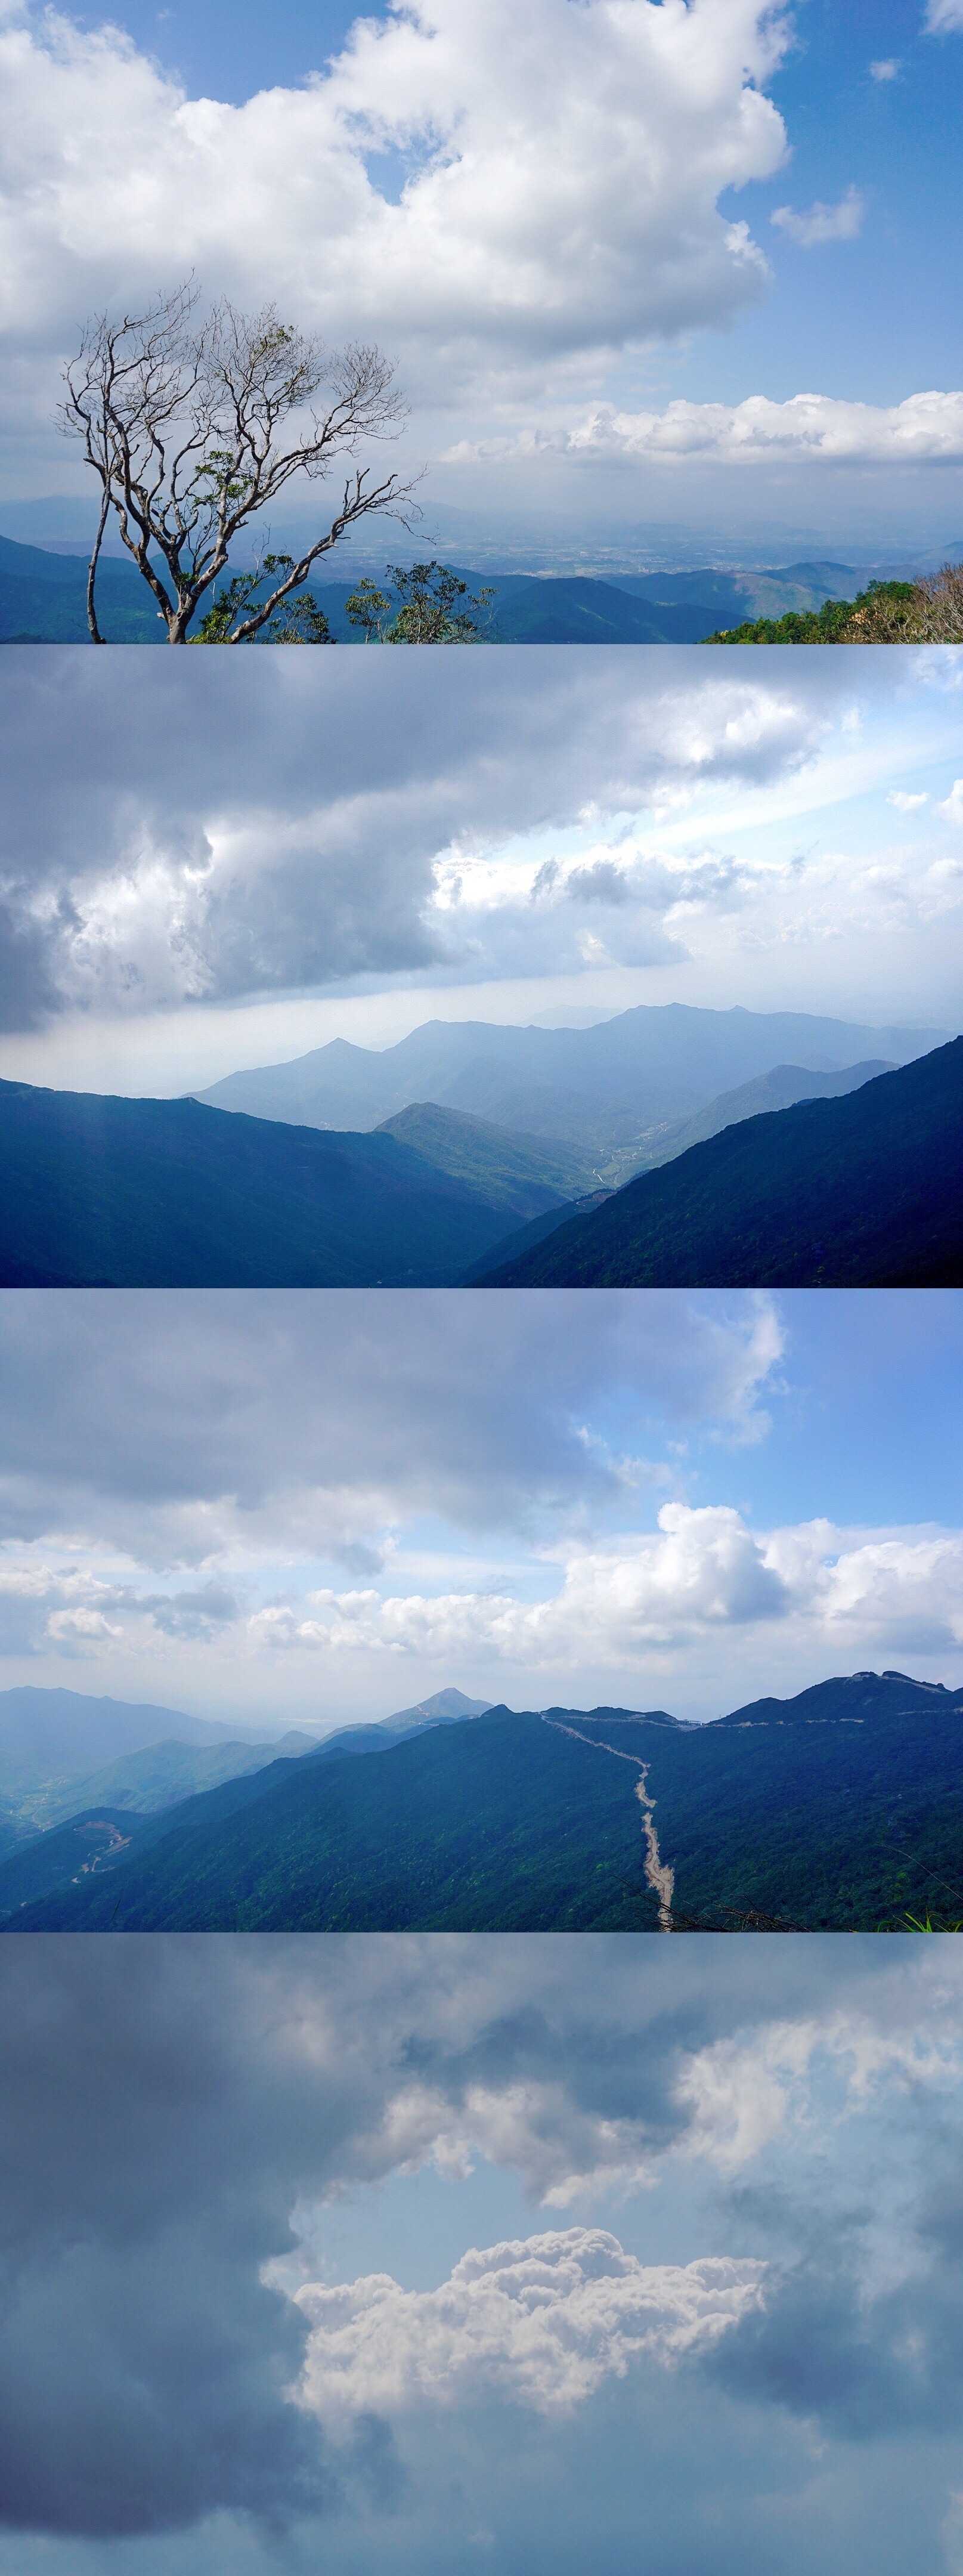 天上草甸——惠州大南山御景峰